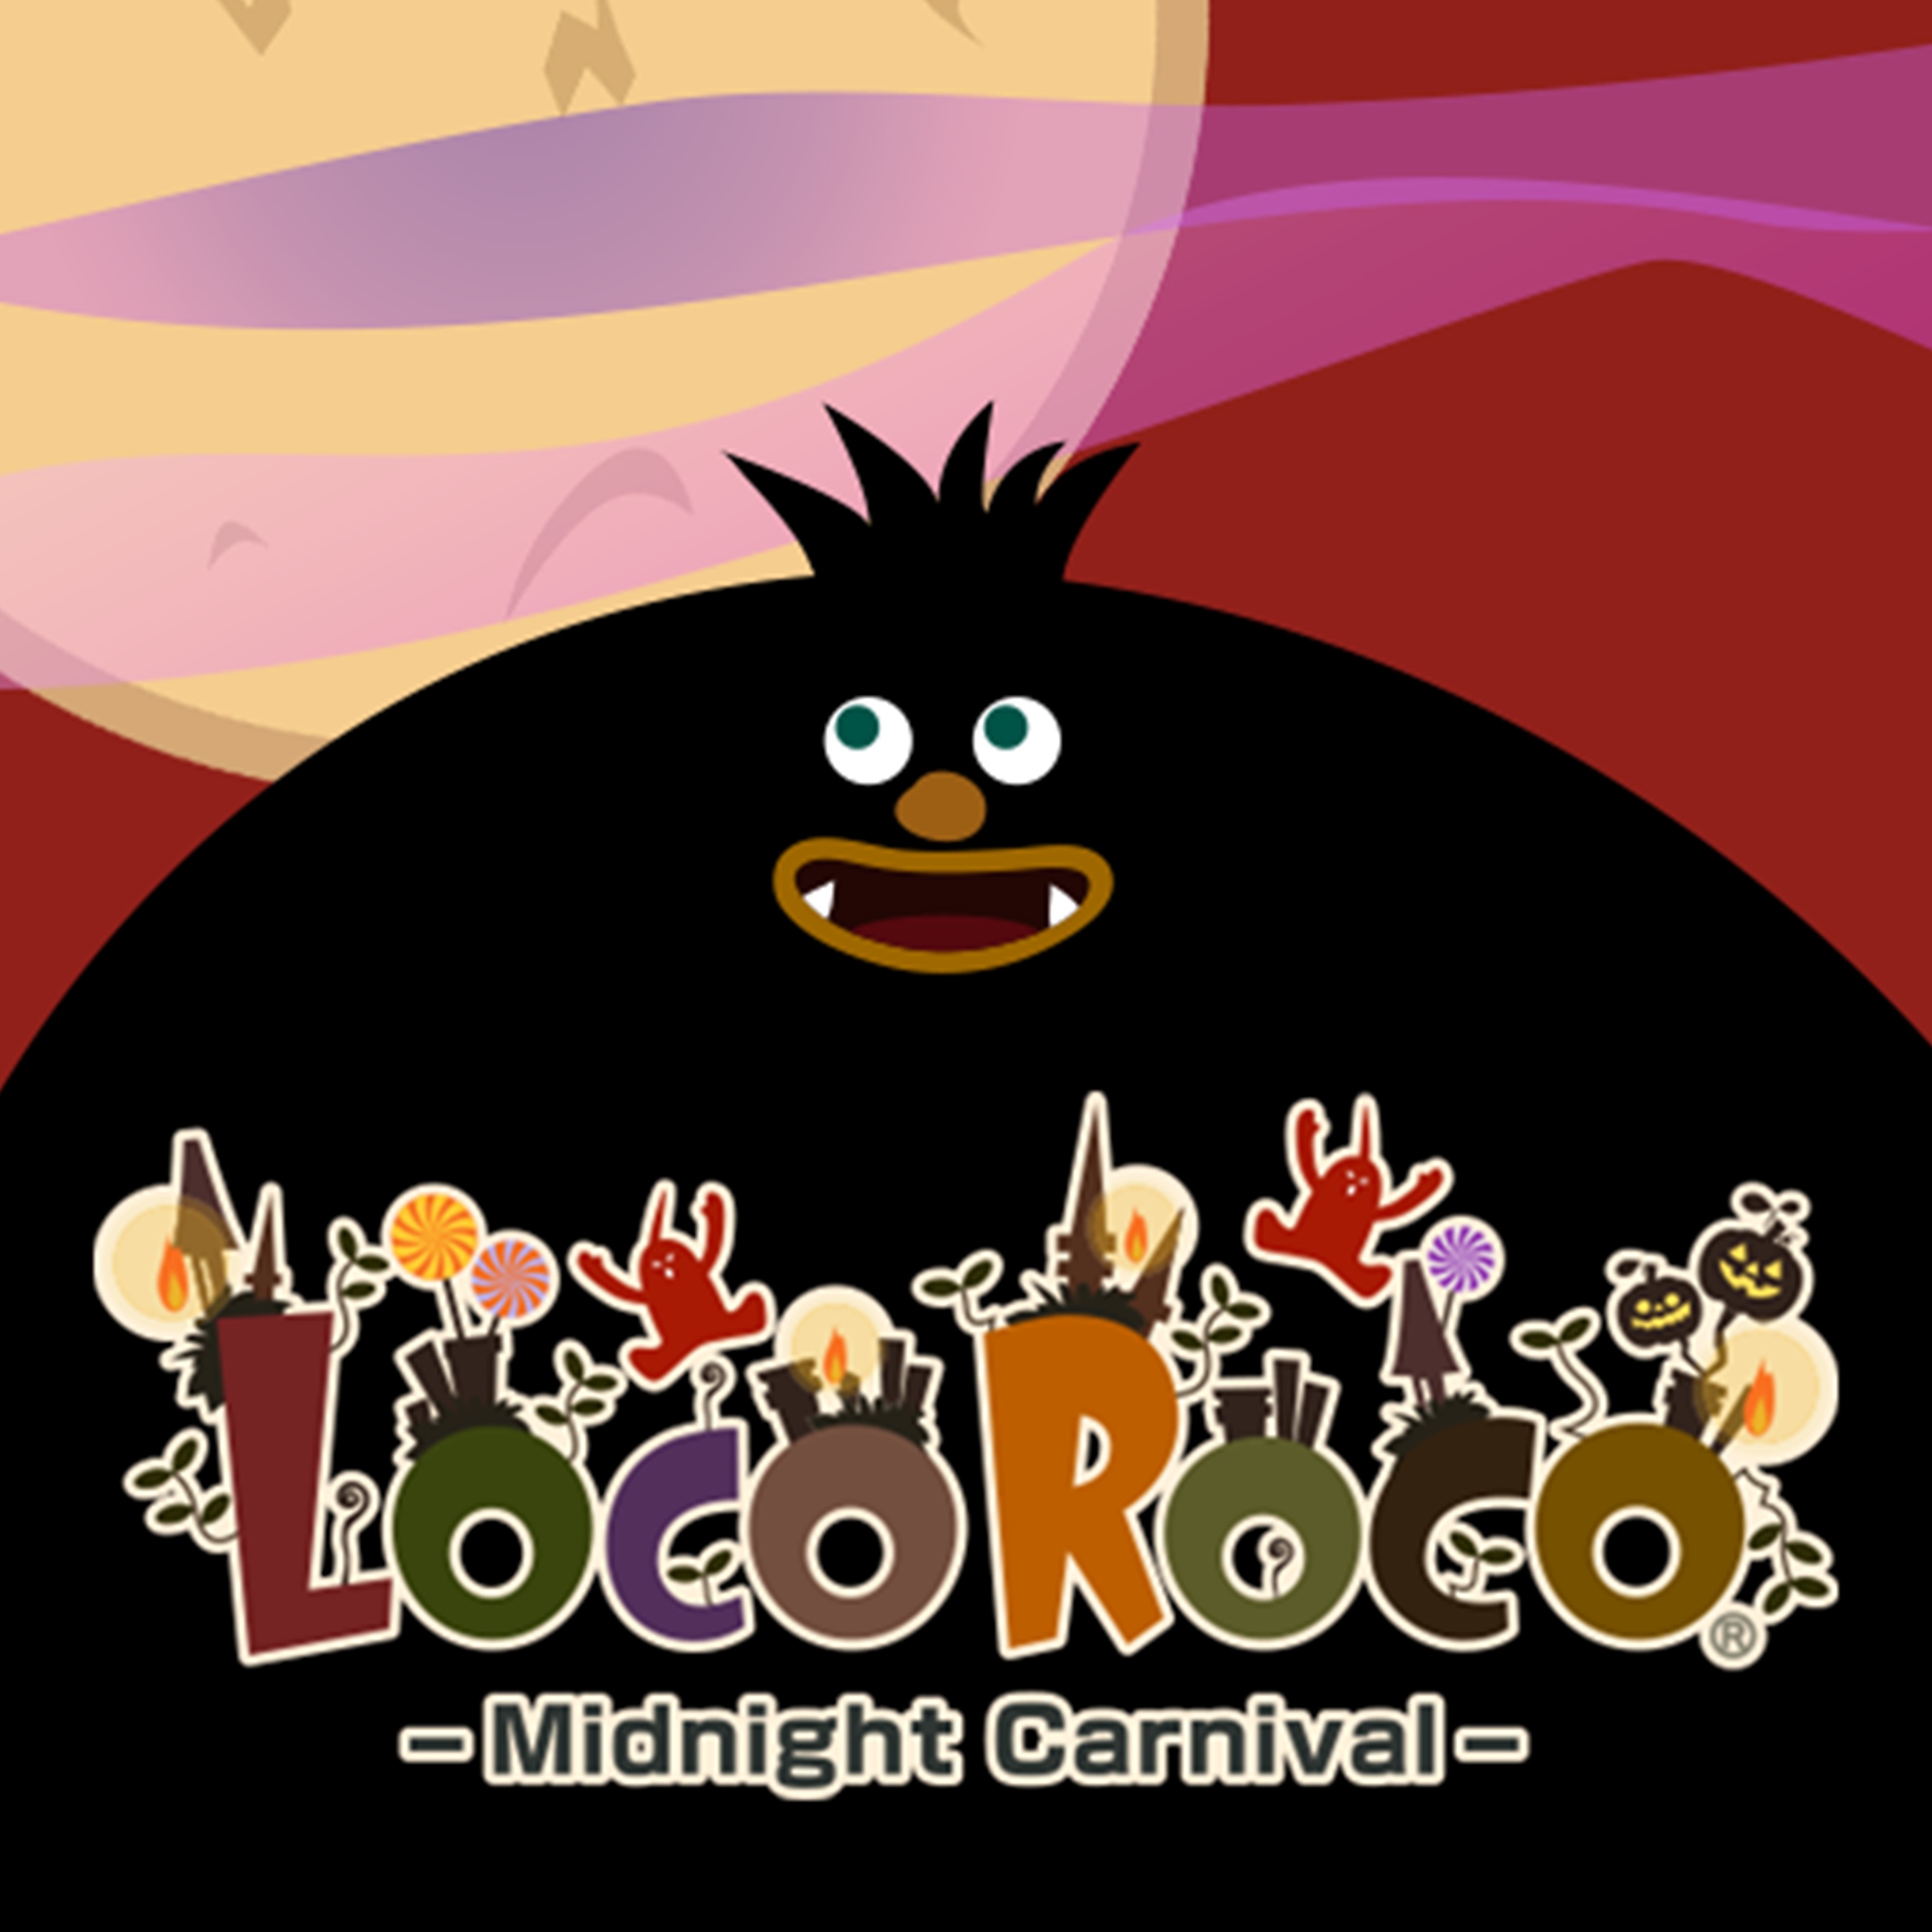 Arte de LocoRoco Midnight Carnival mostrando una gran figura negra de dibujos animados